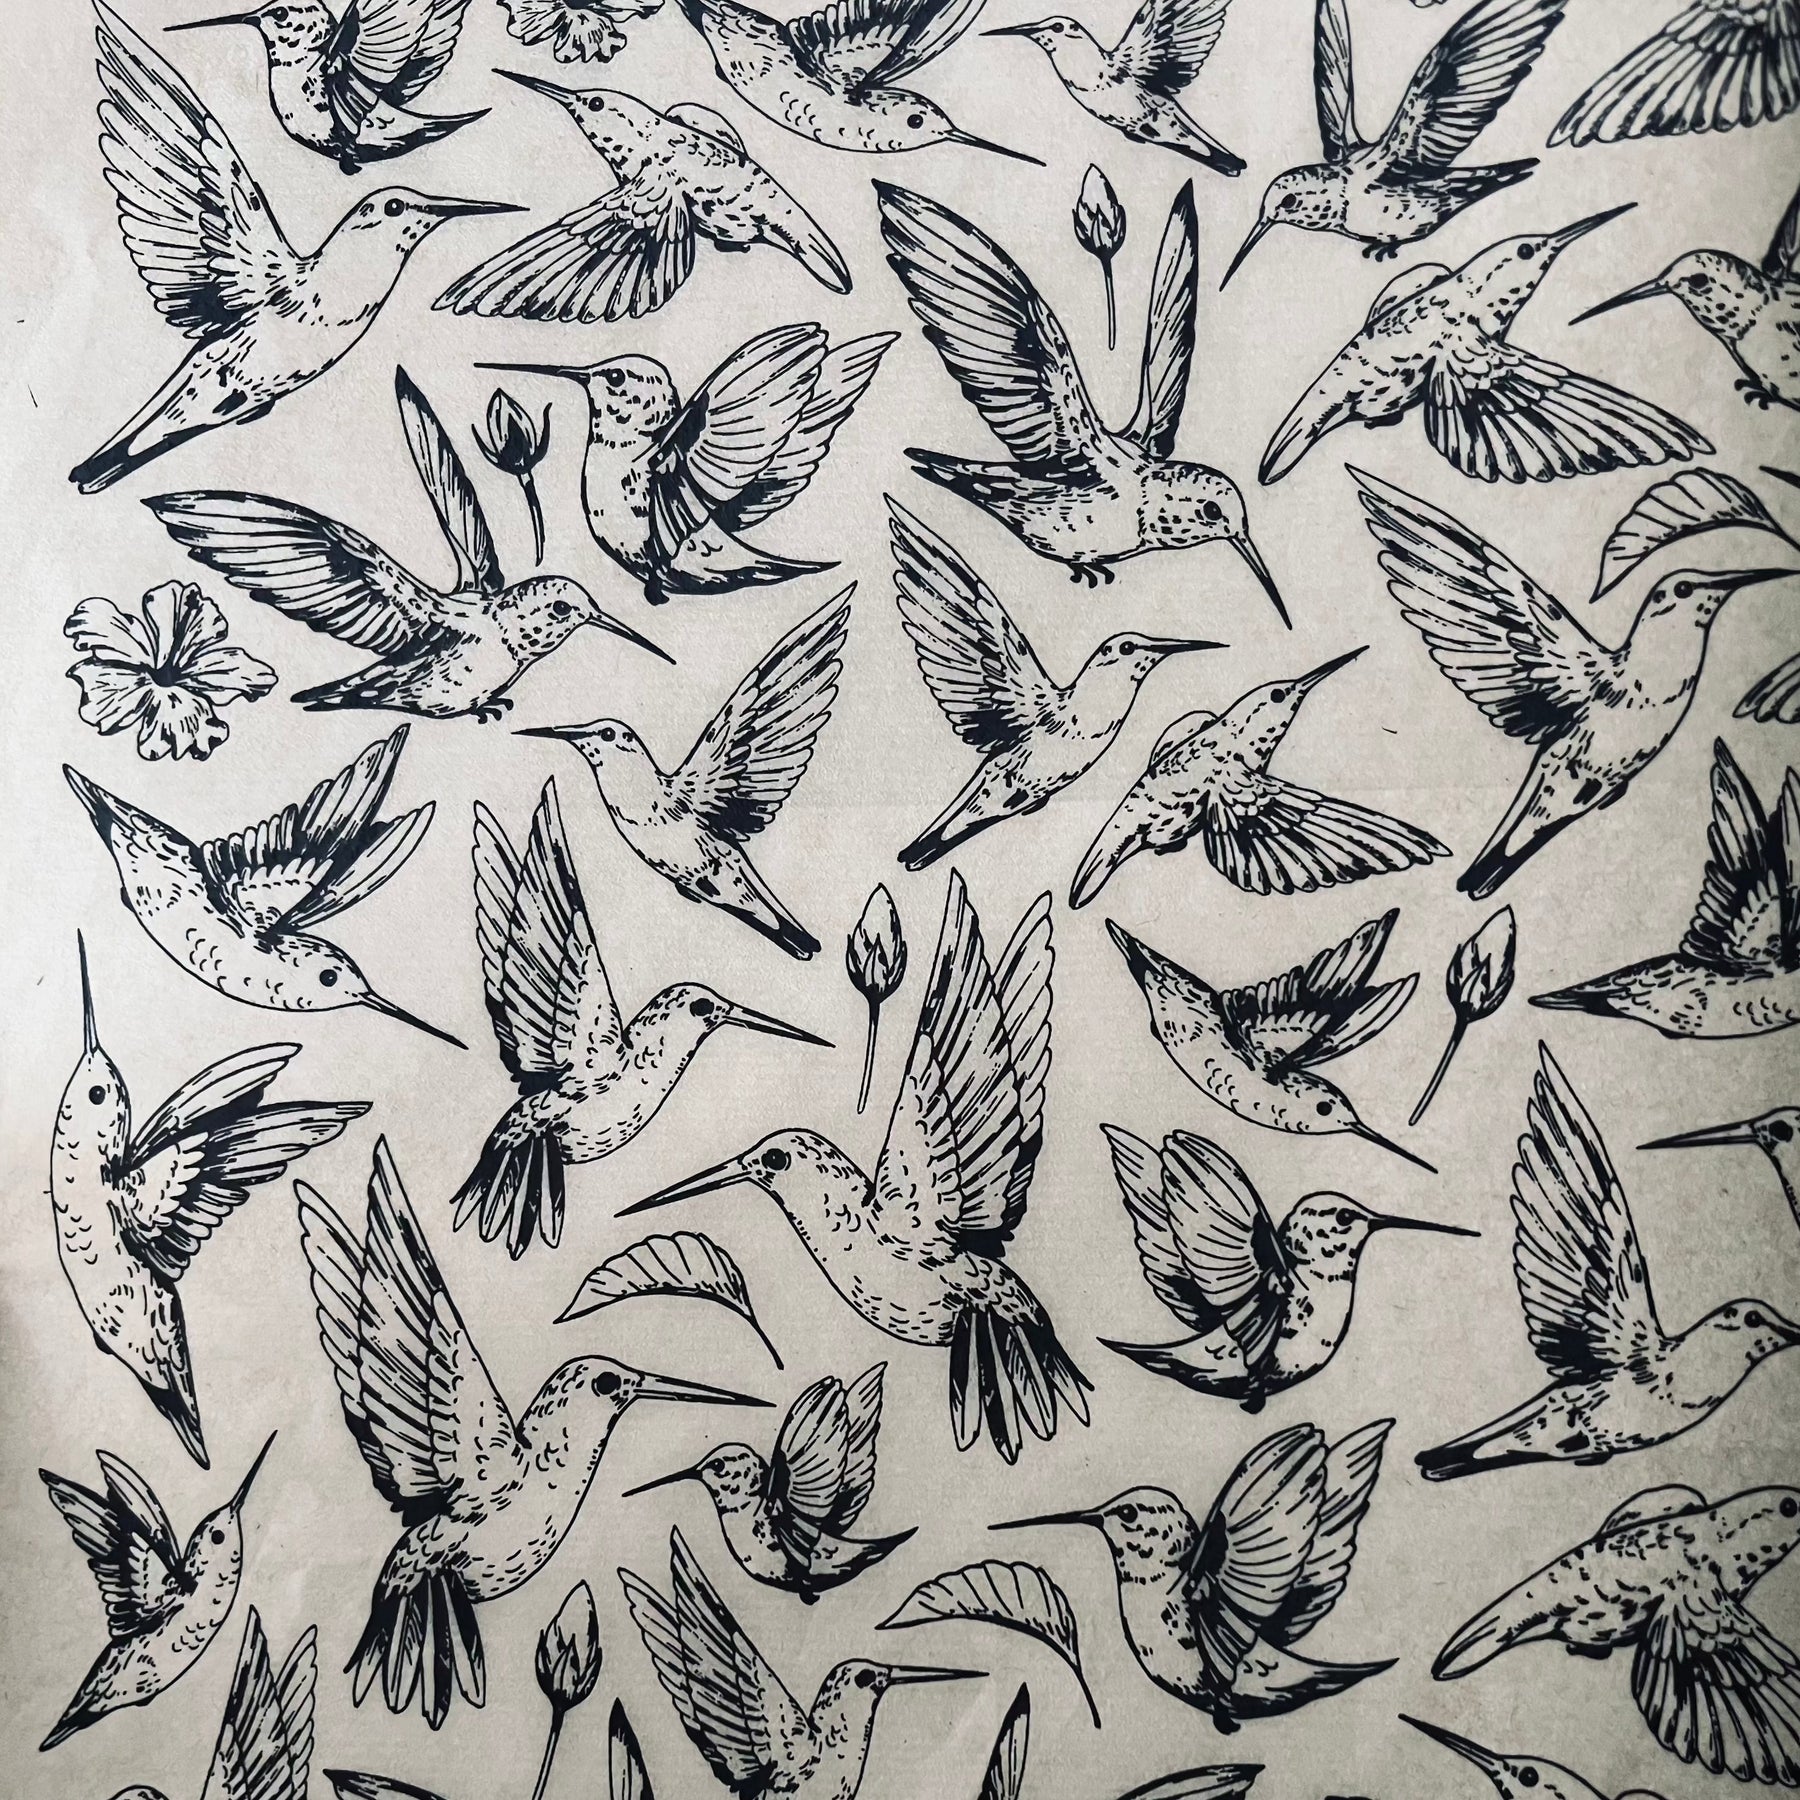 Hummingbirds - Underglaze Transfer Sheet - Black